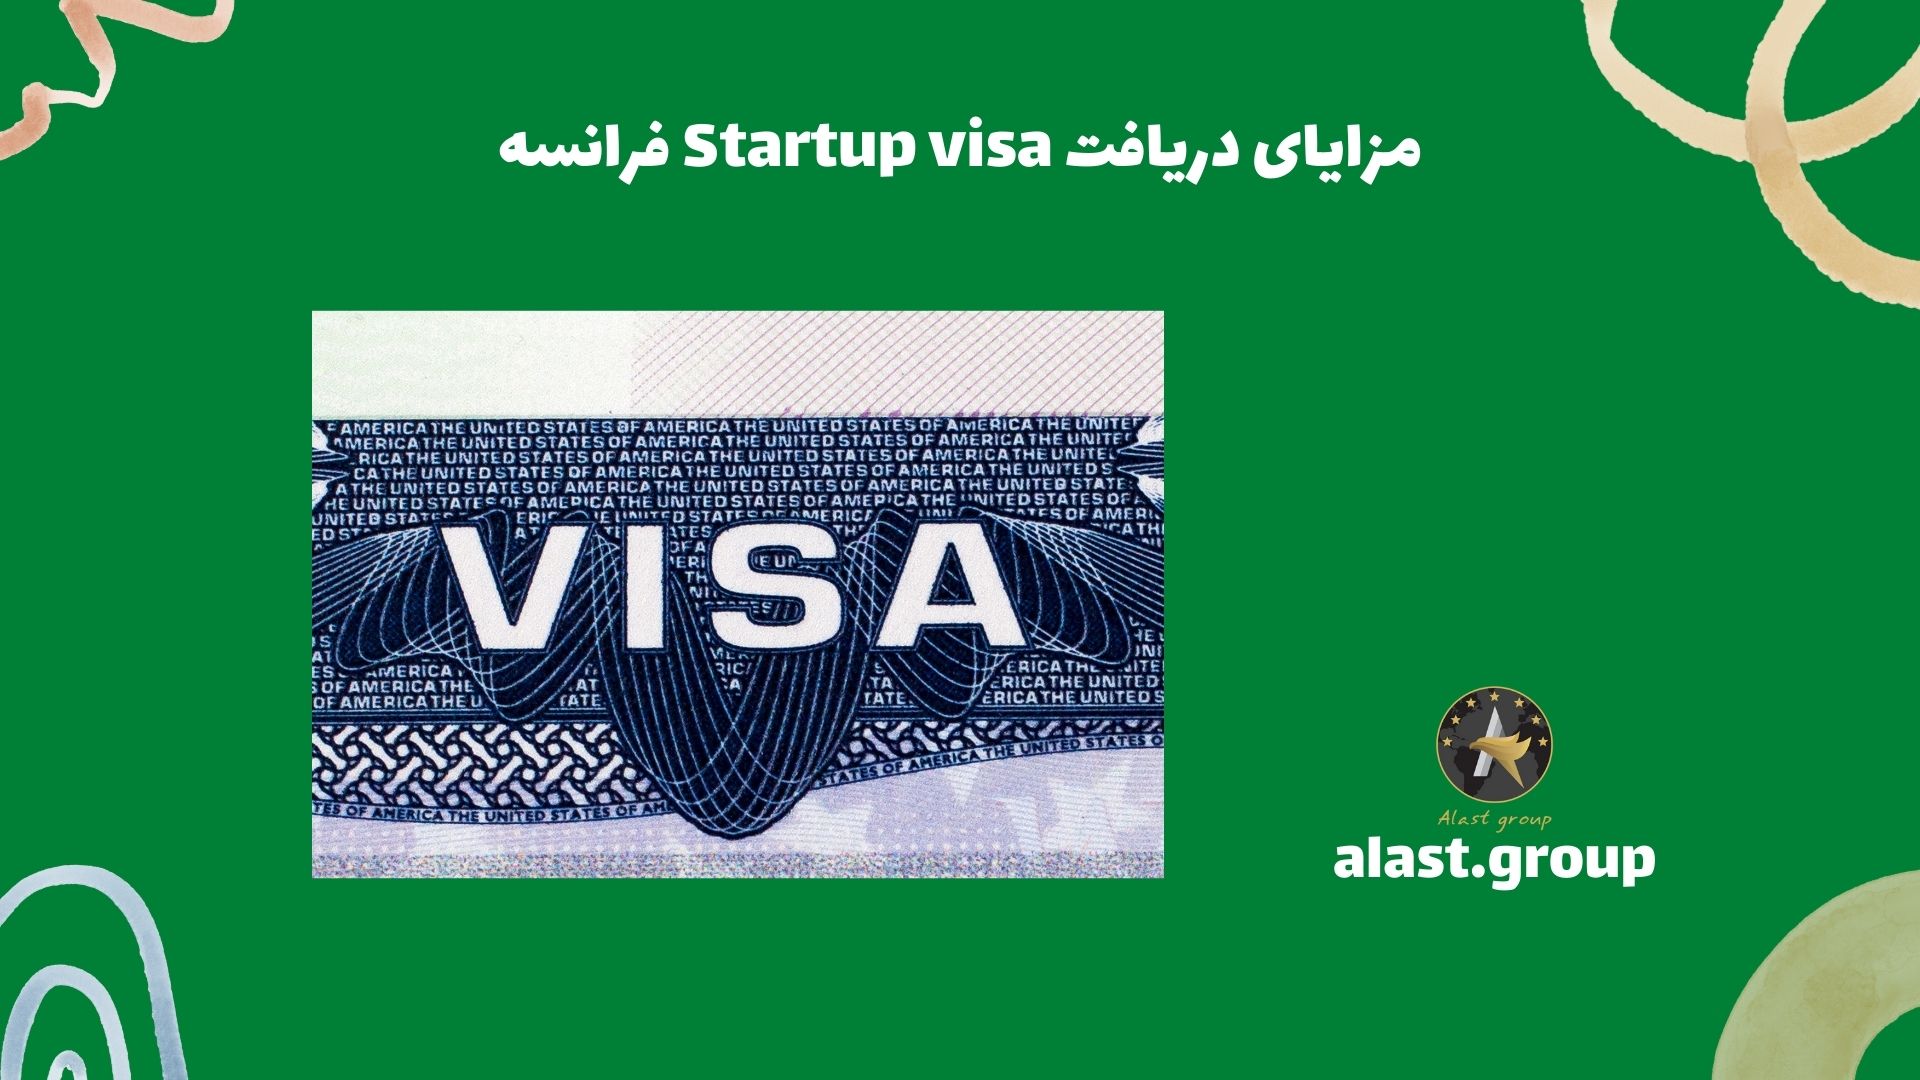 مزایای دریافت Startup visa فرانسه